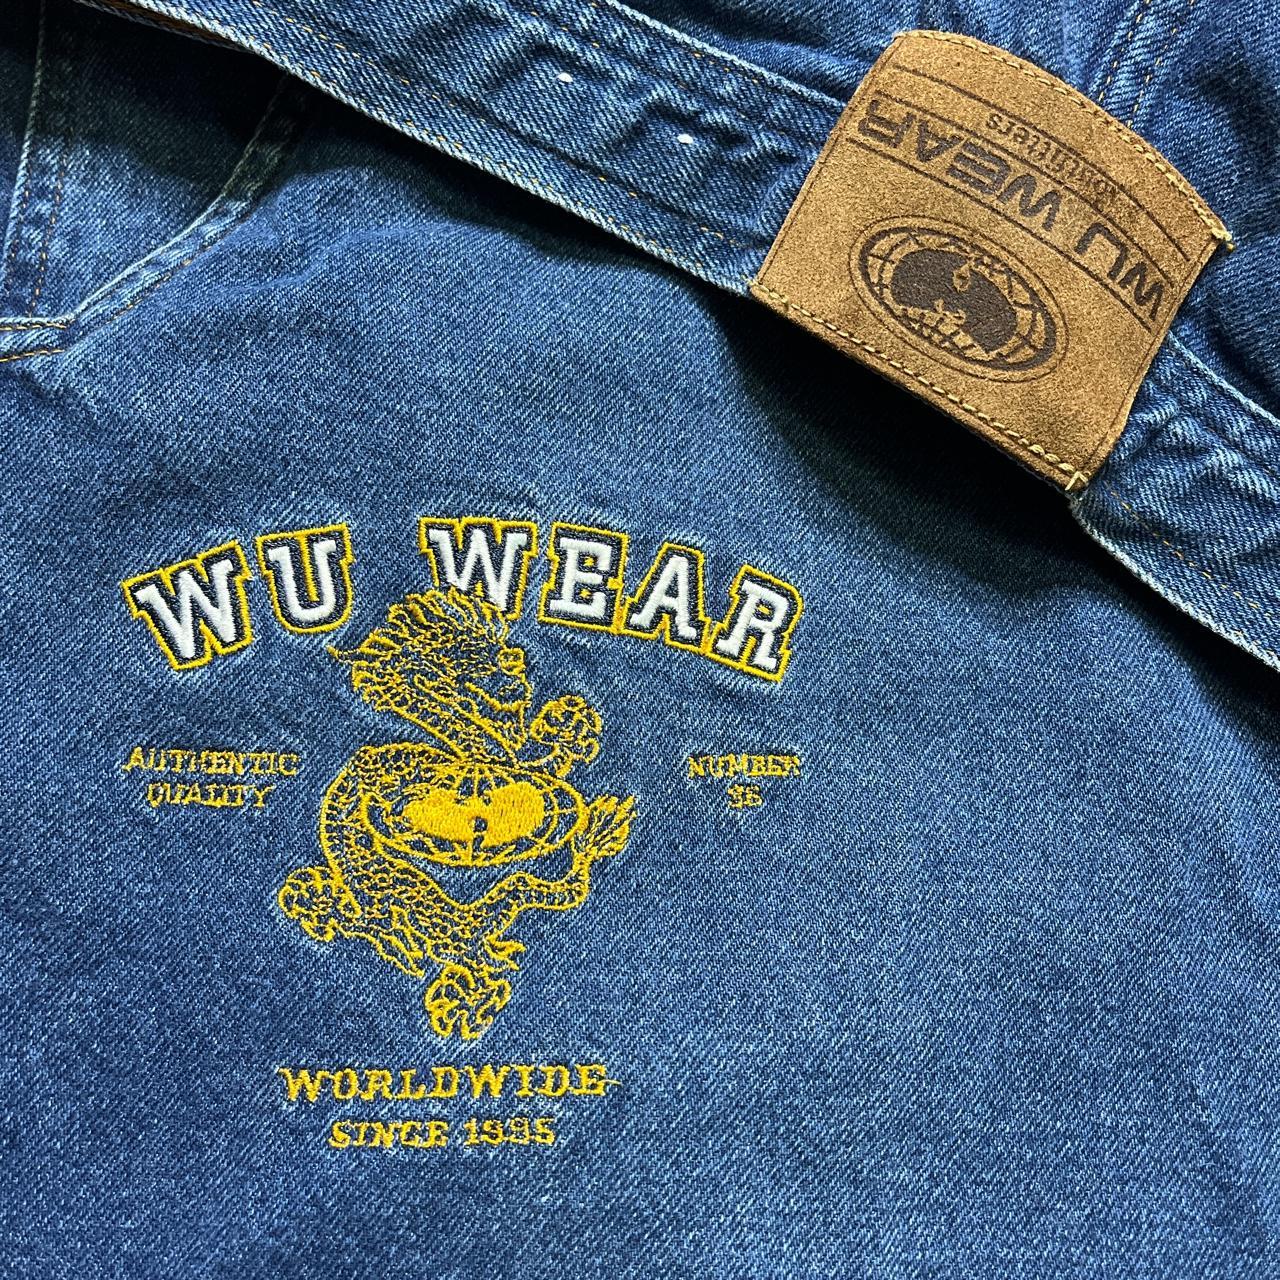 Wu Wear Men's Blue Jeans (3)